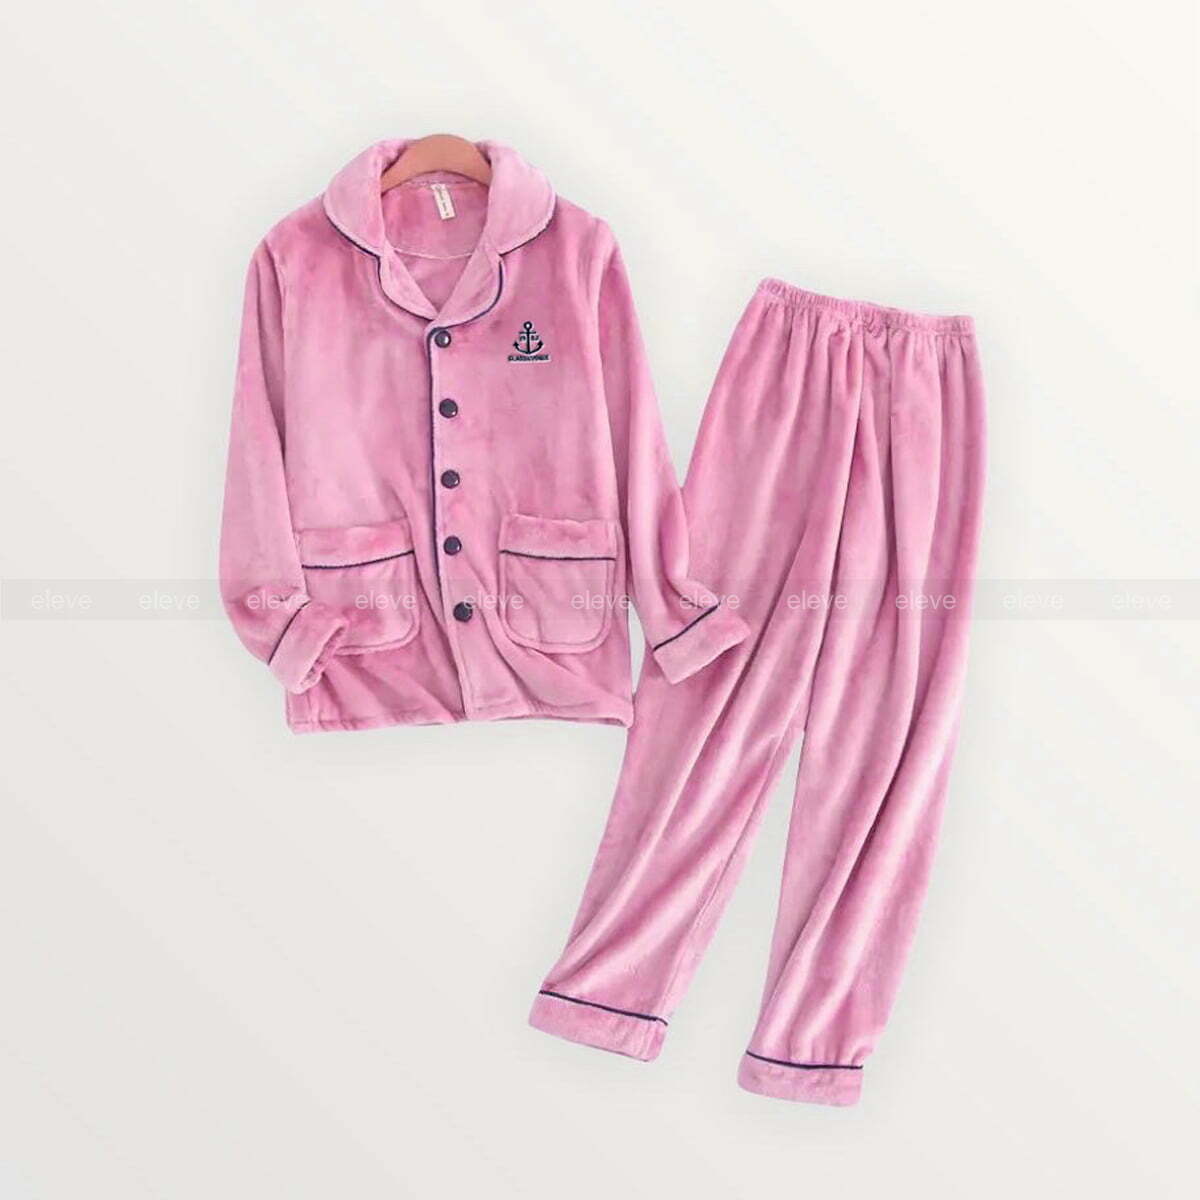 pink pajama